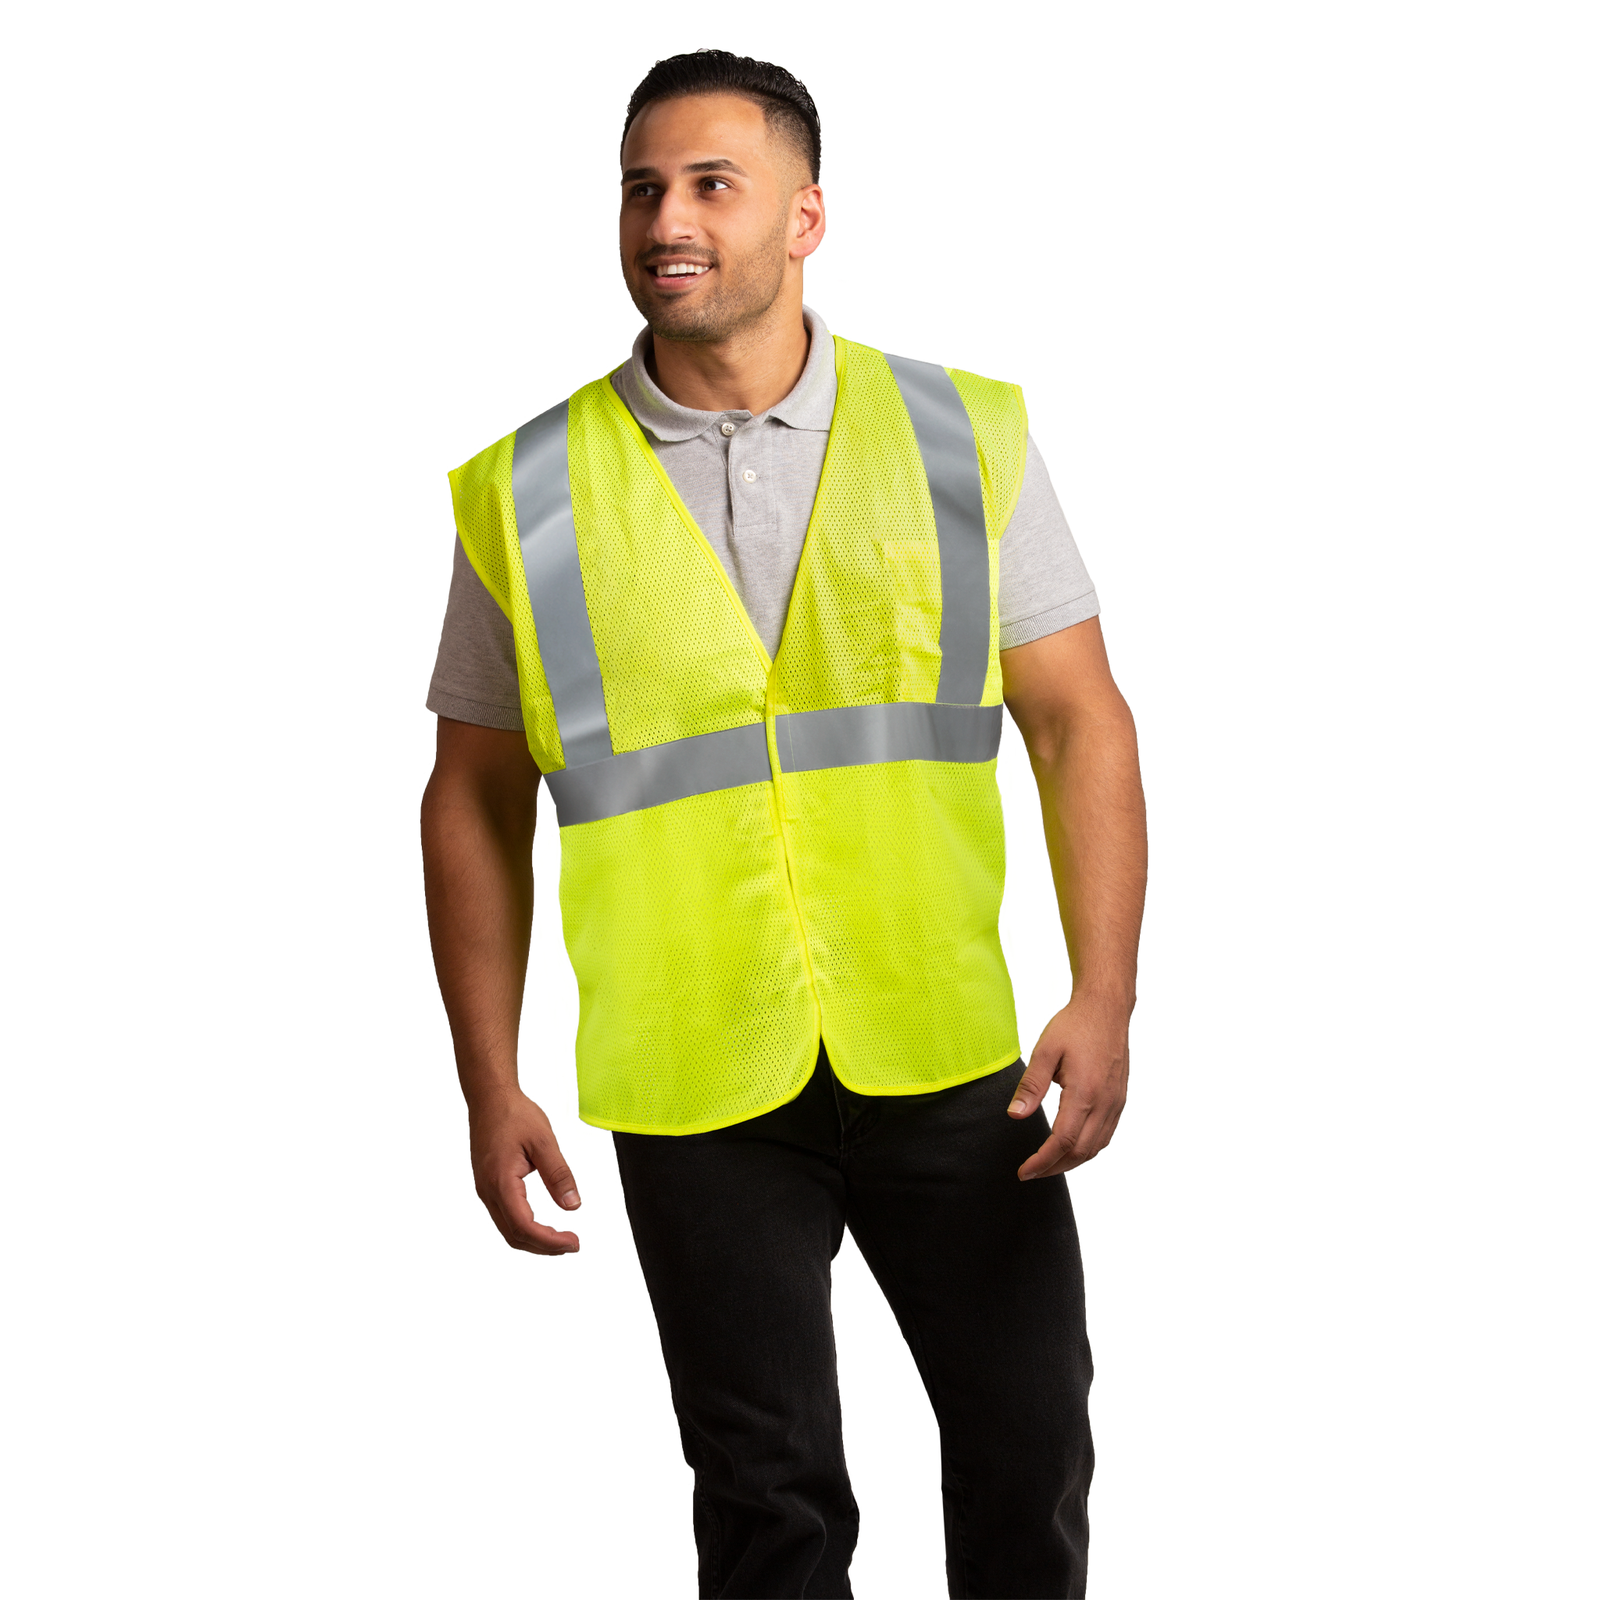 Man wearing a lime JORESTECH hi-vis mesh safety vest with pocket